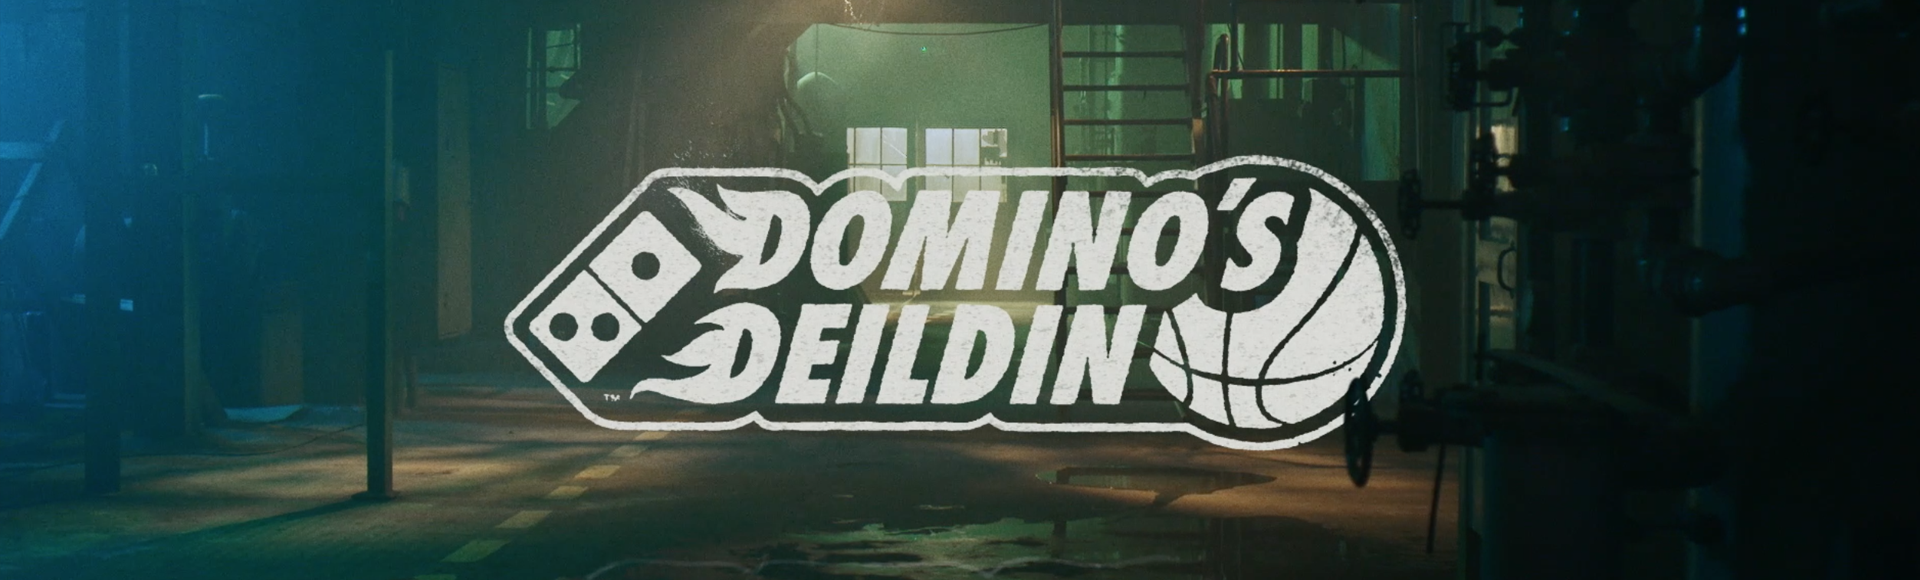 Úrslitakeppni Domino's deildar karla · KR-KEFLAVÍK í kvöld